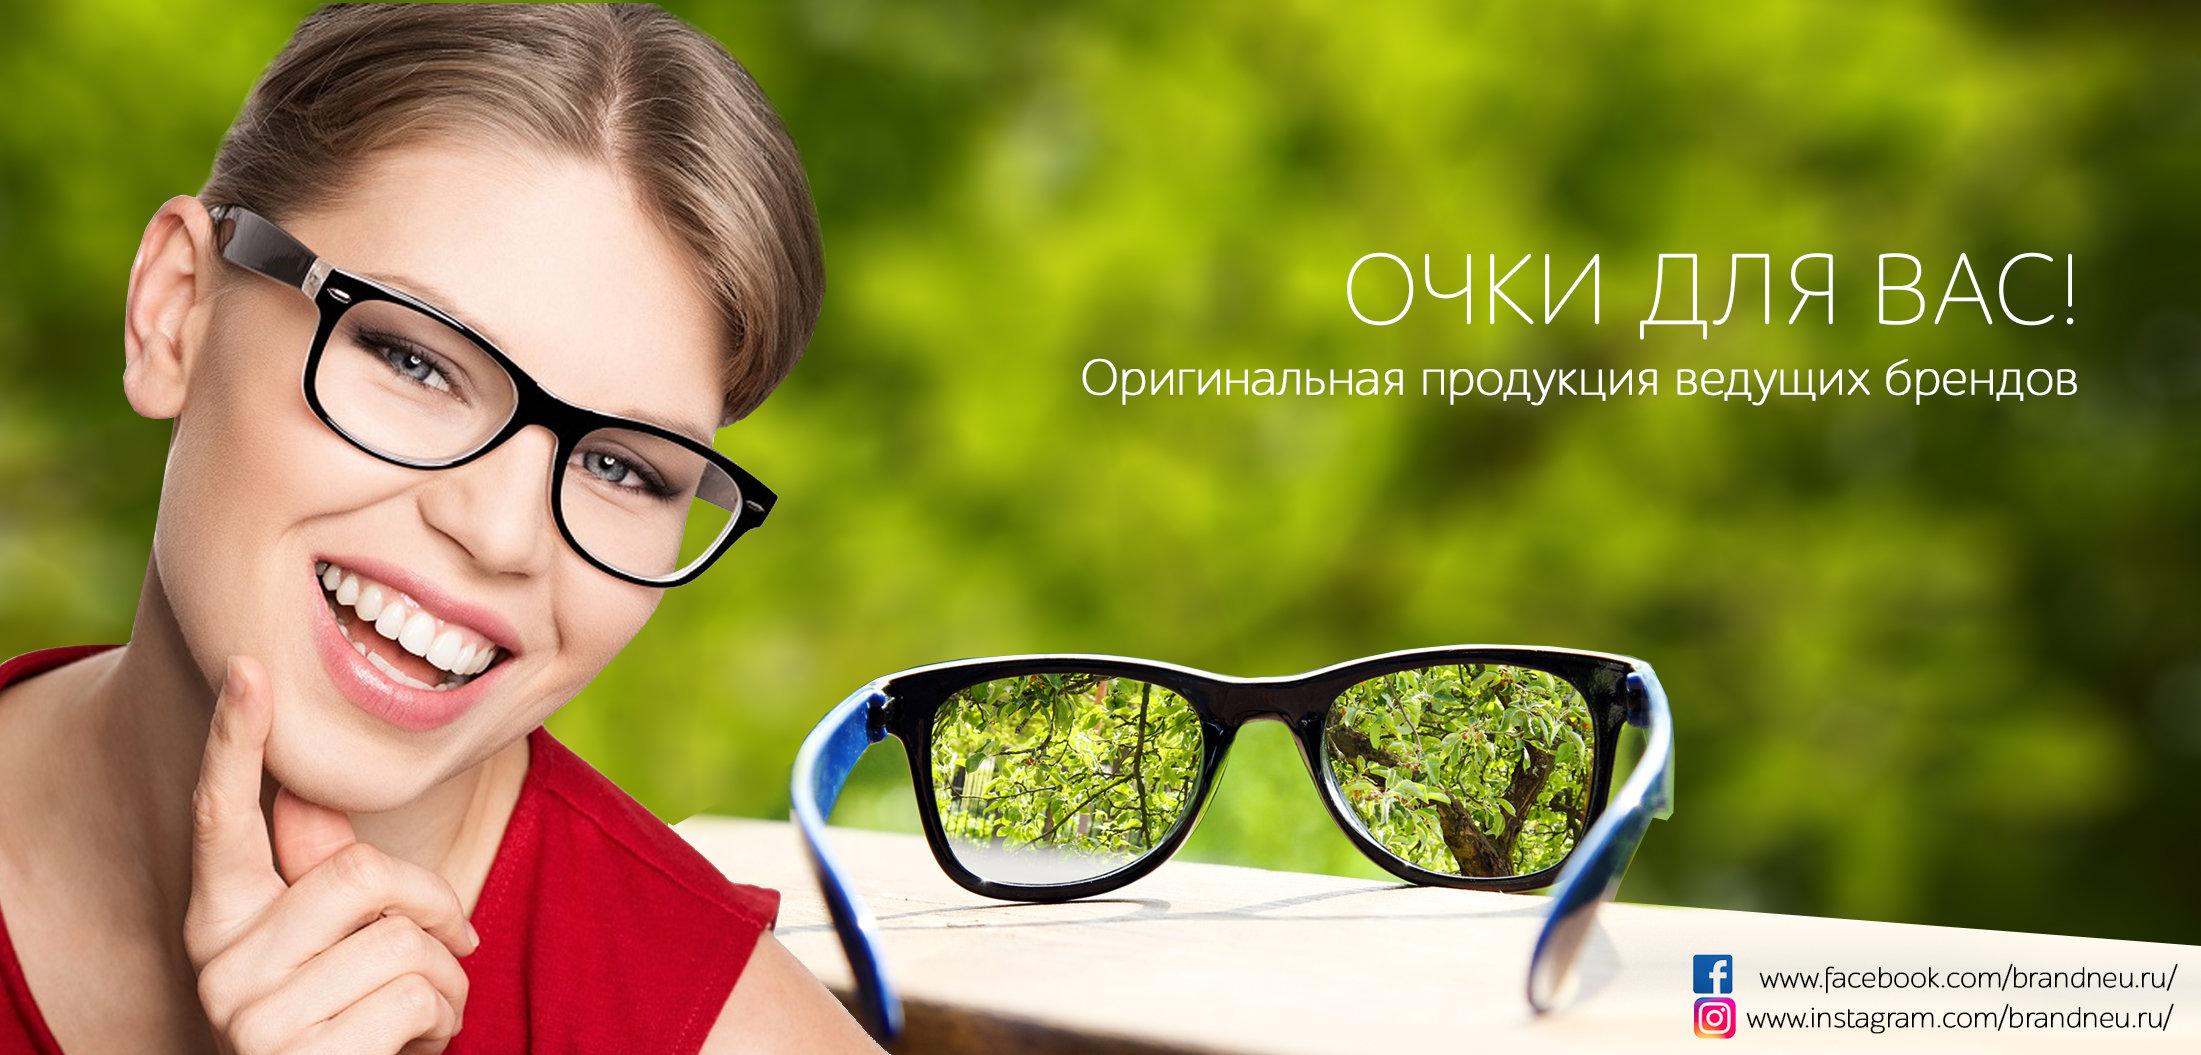 Очки отзывы врачей. Очки реклама. Реклама очков для зрения. Реклама оптик. Баннер оптики.